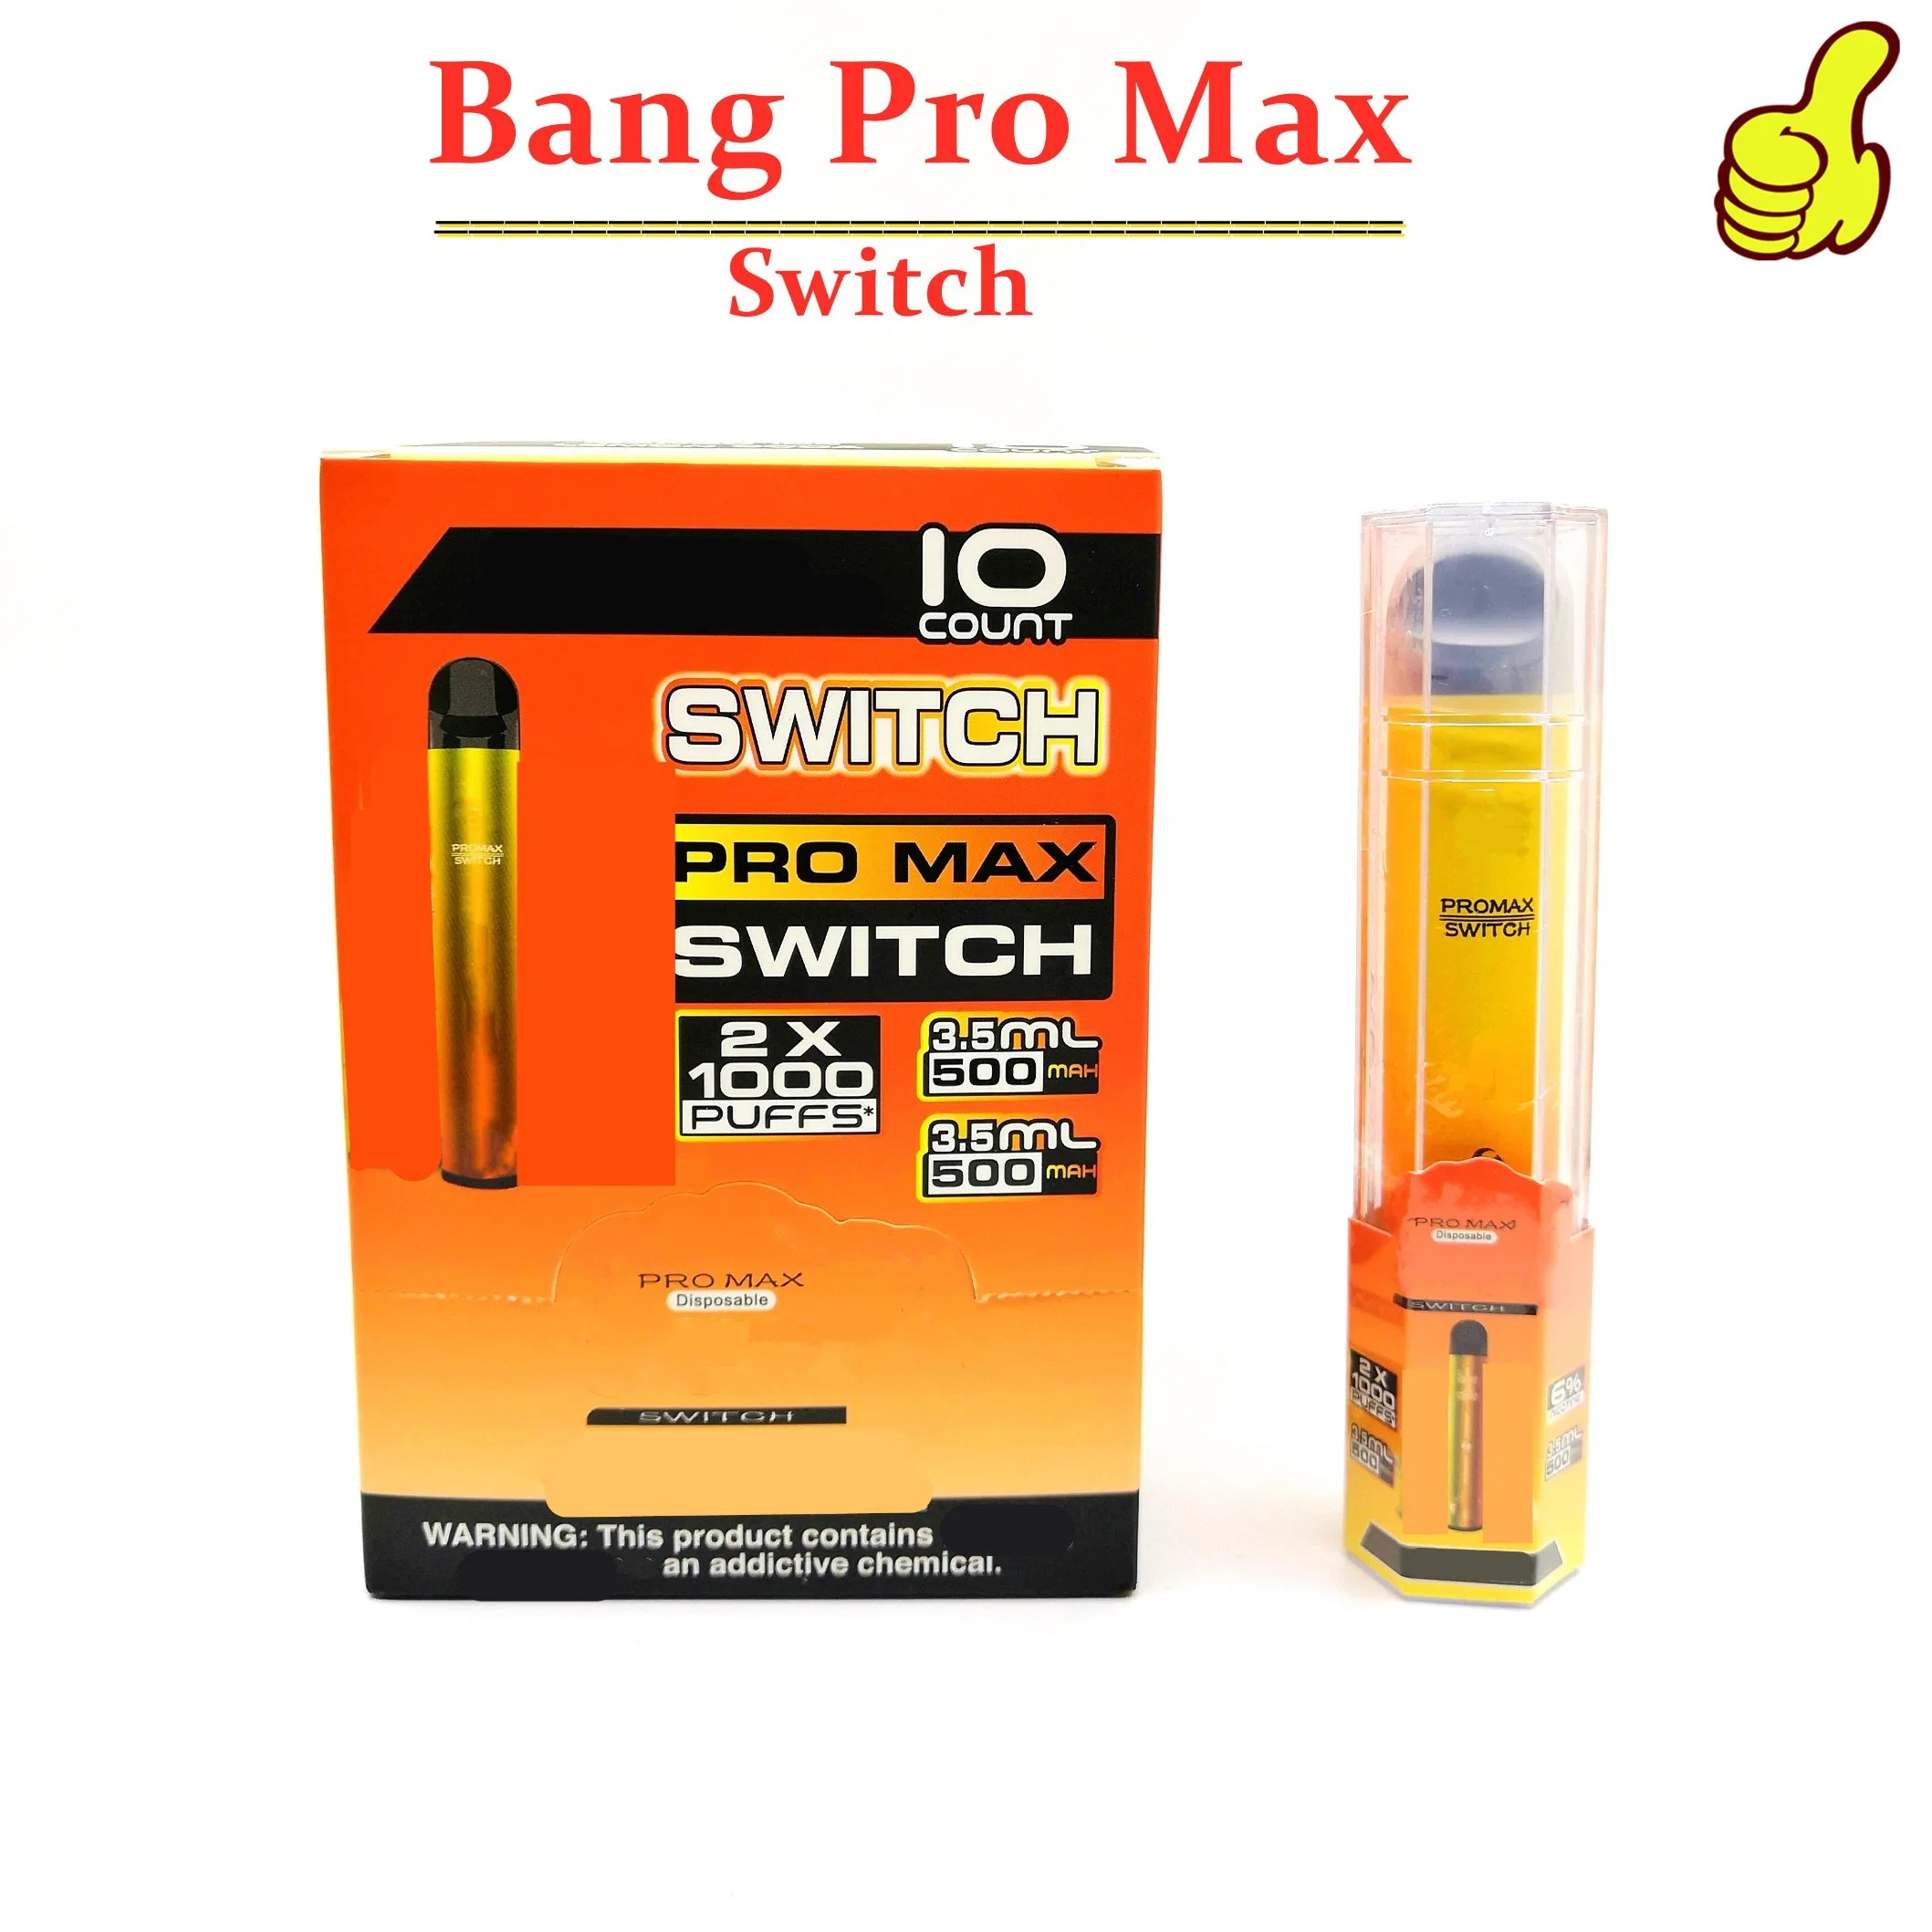 Tendencia caliente Bang Pro Max conmutador 2000 inhalaciones cigarrillo electrónico de los precios Mayorista/Proveedors